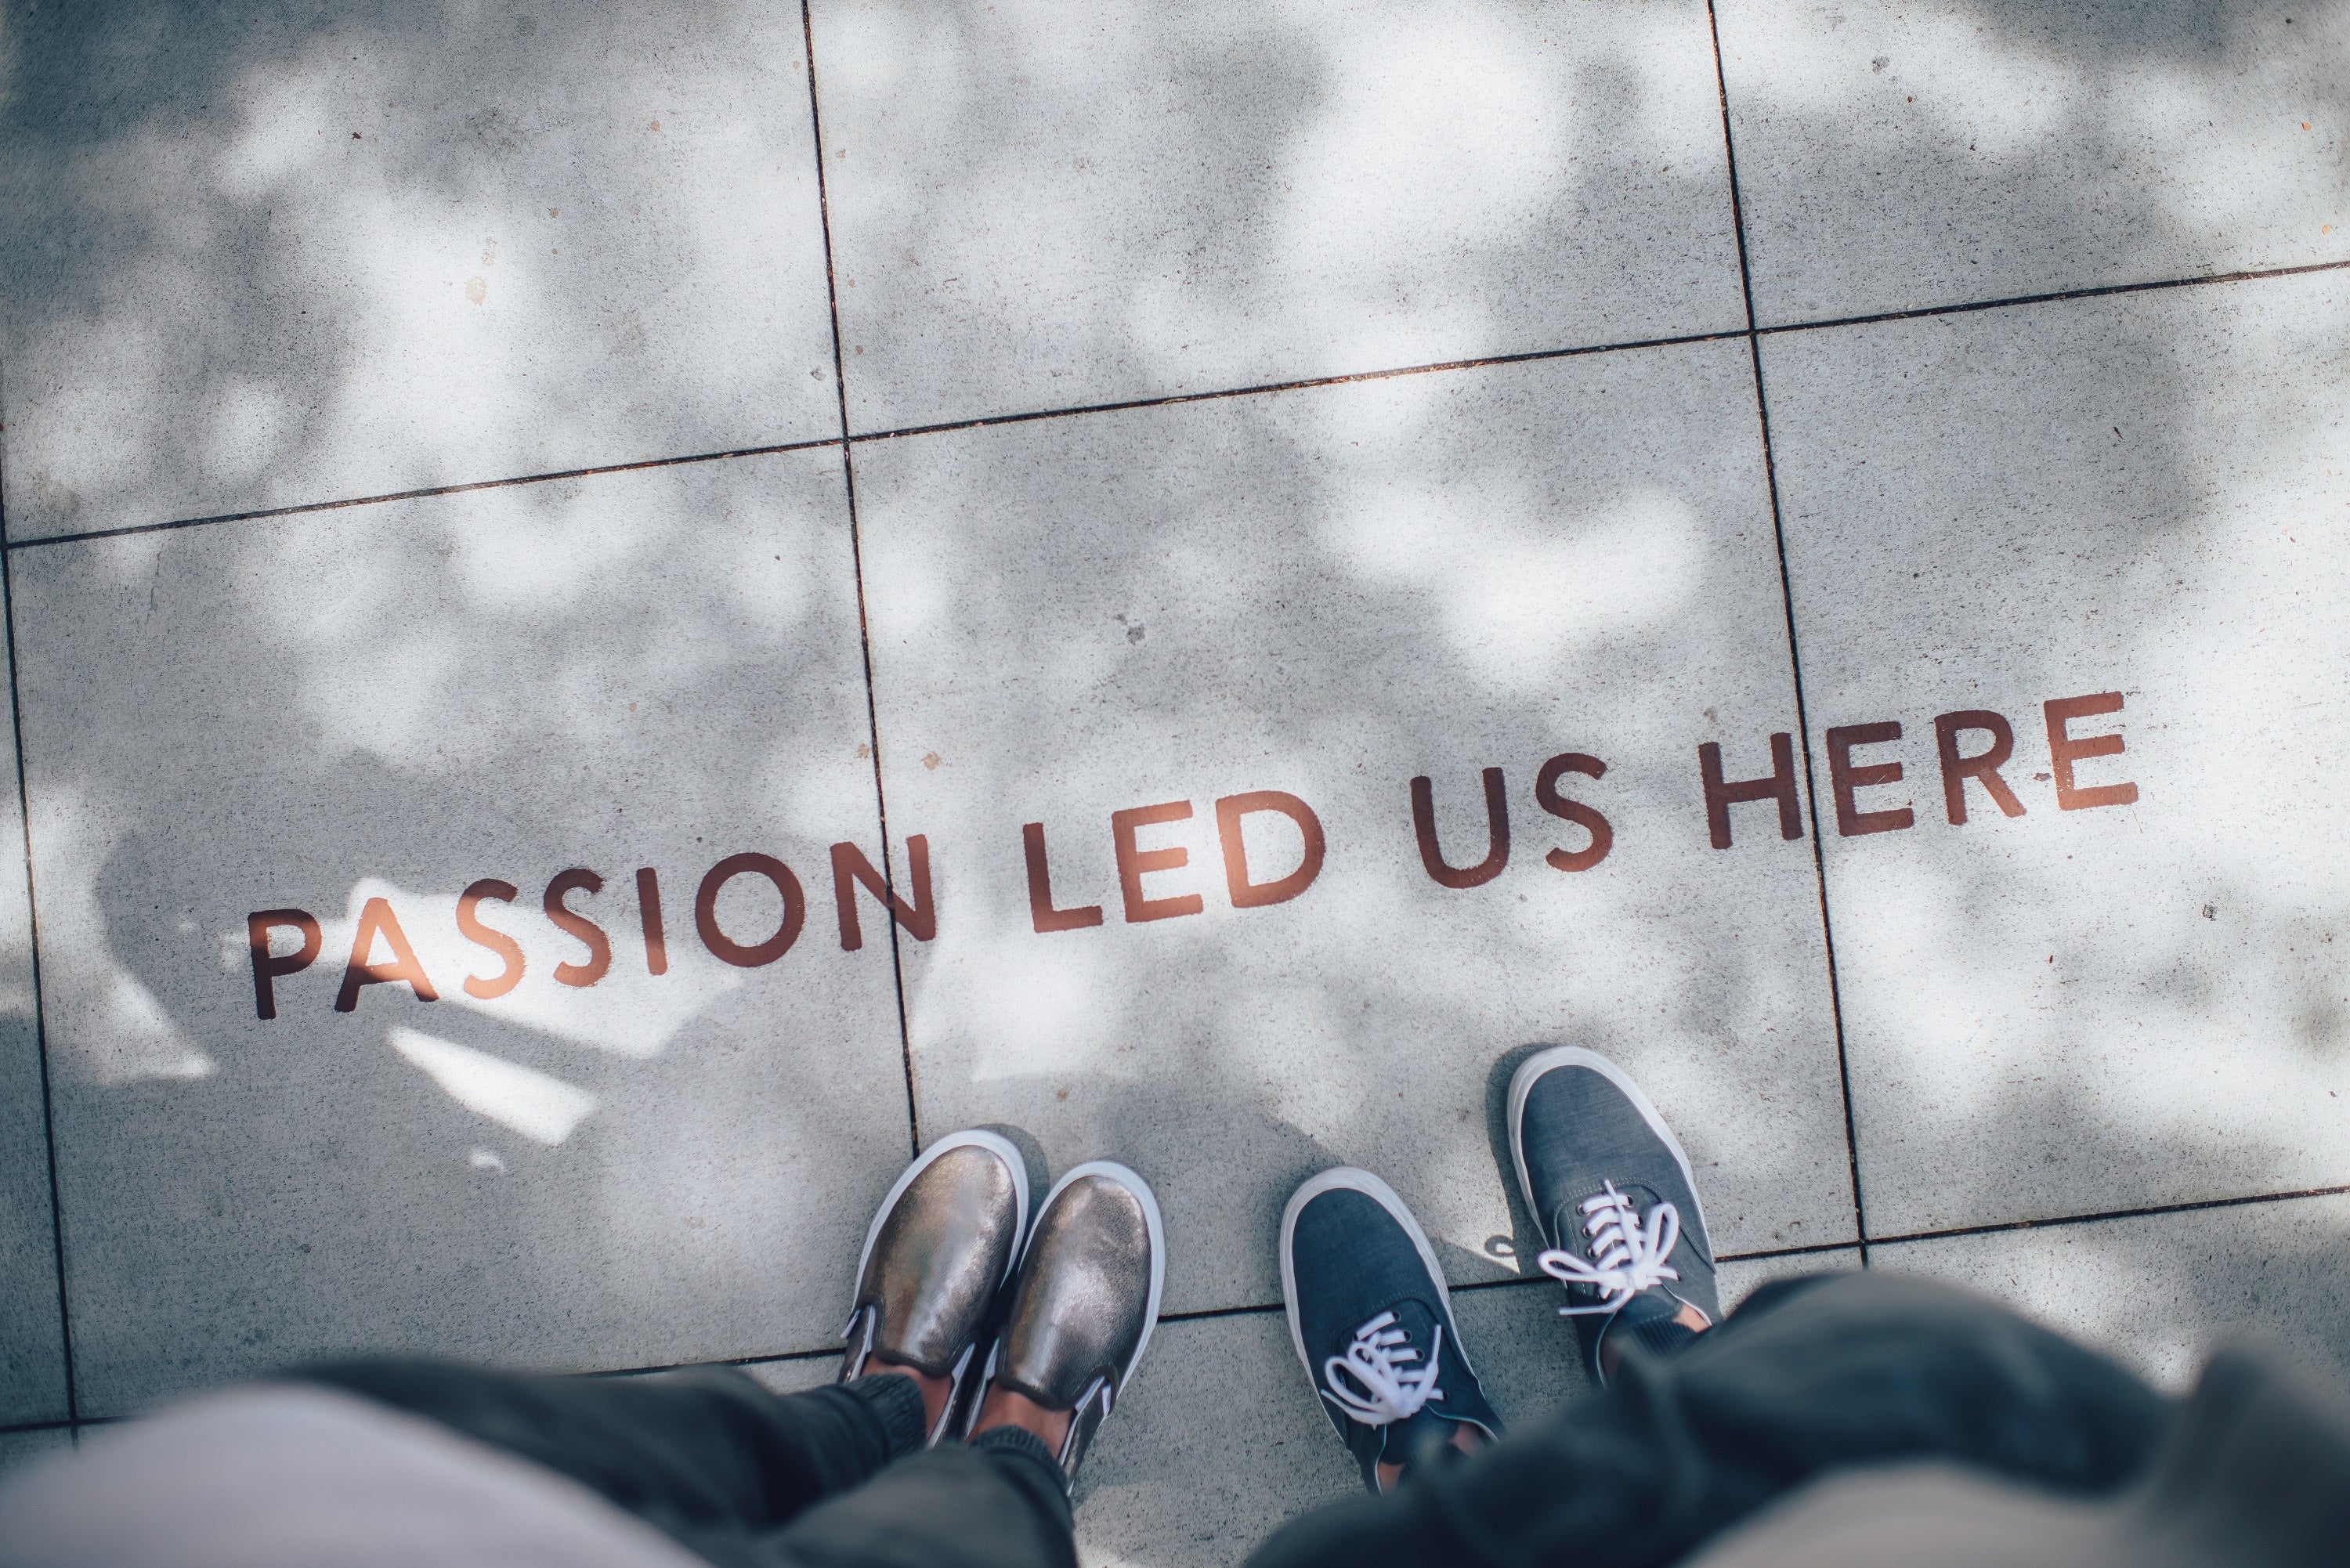 Intrinsische Motivation: Aufschrift “Passion led us here” auf Boden